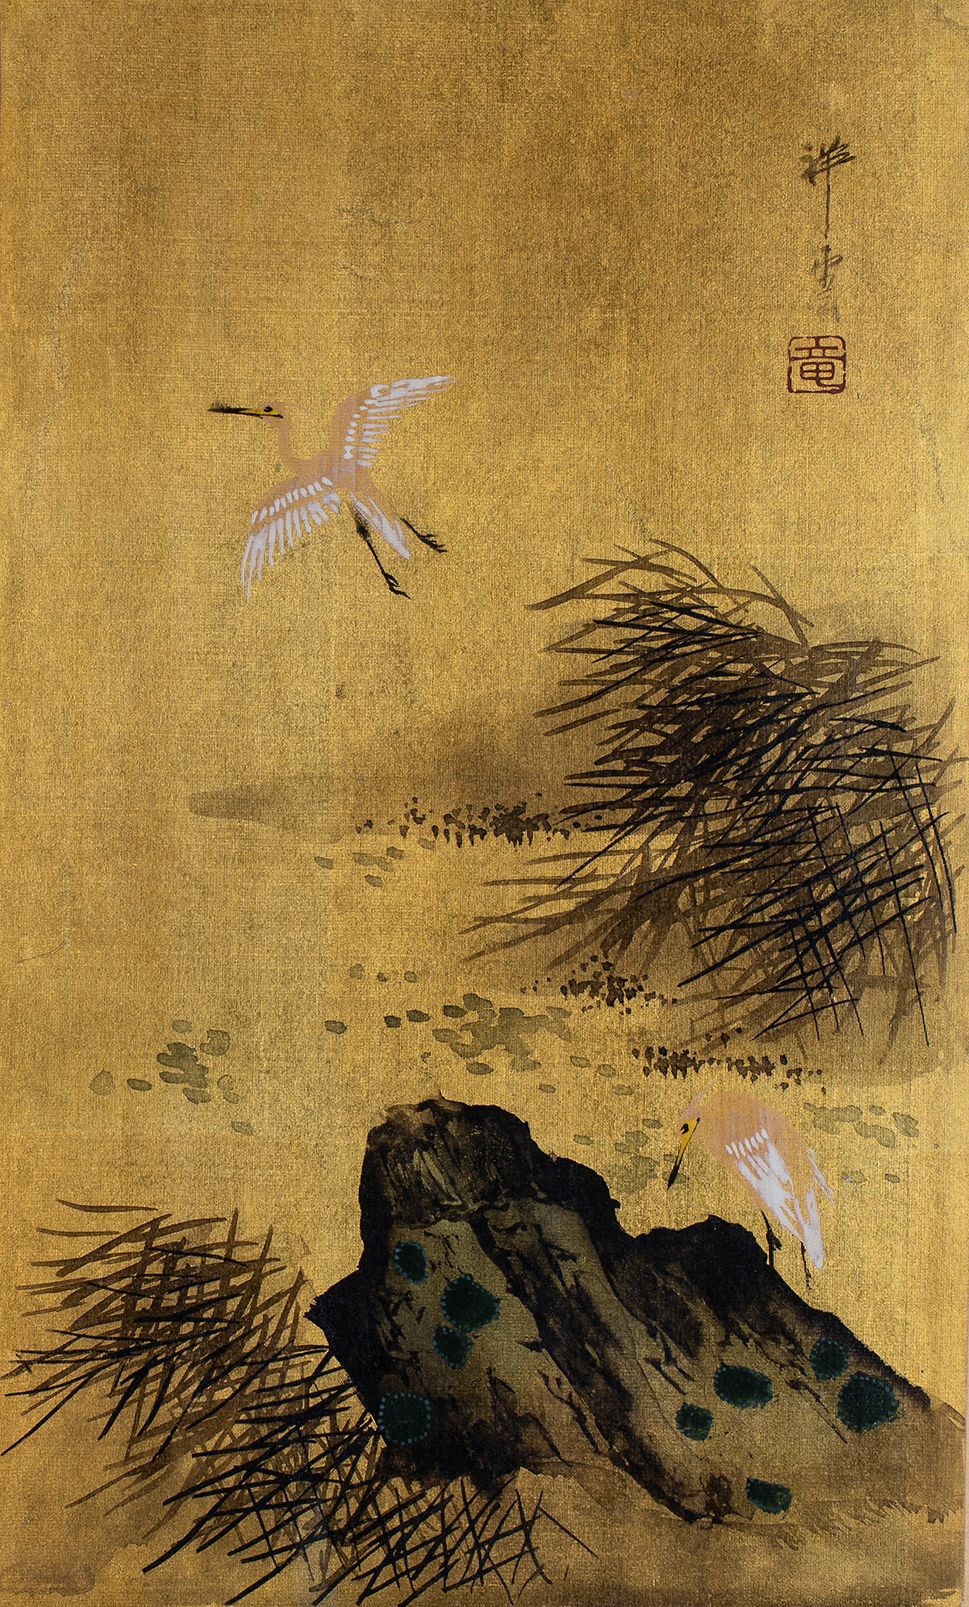 Null 
Malerei von Wathosen auf Goldglimmer. Showa 20. Japan

H. 34 cm L. 23,5 cm